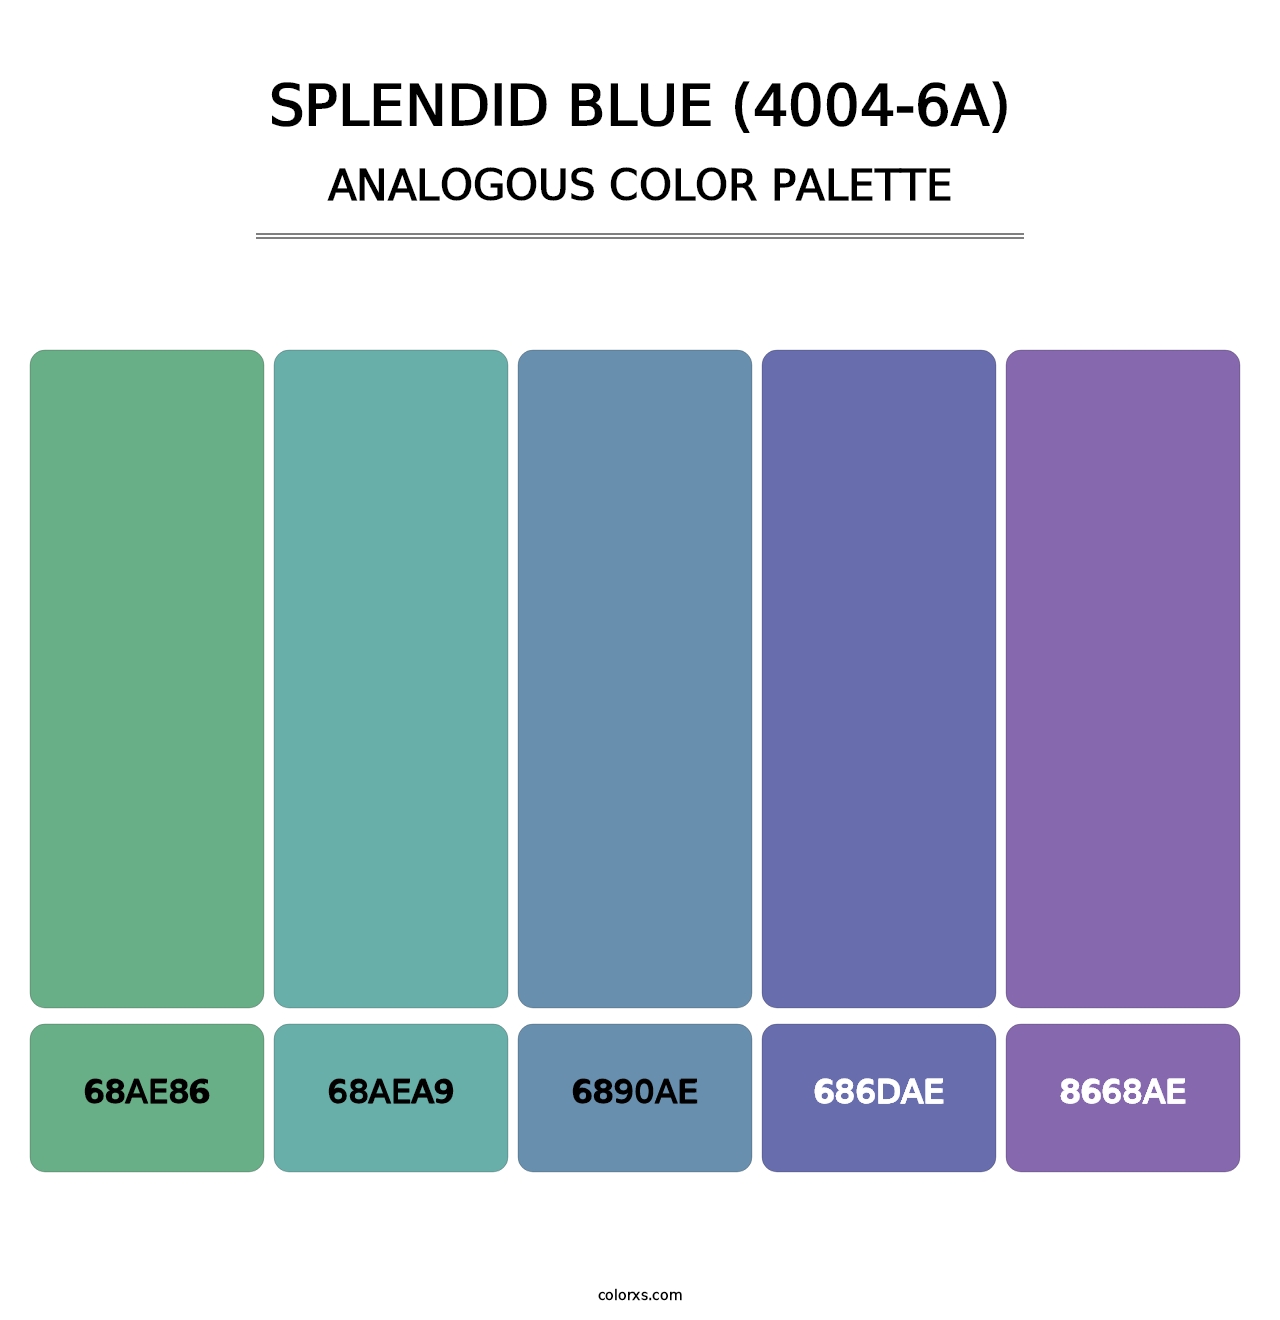 Splendid Blue (4004-6A) - Analogous Color Palette